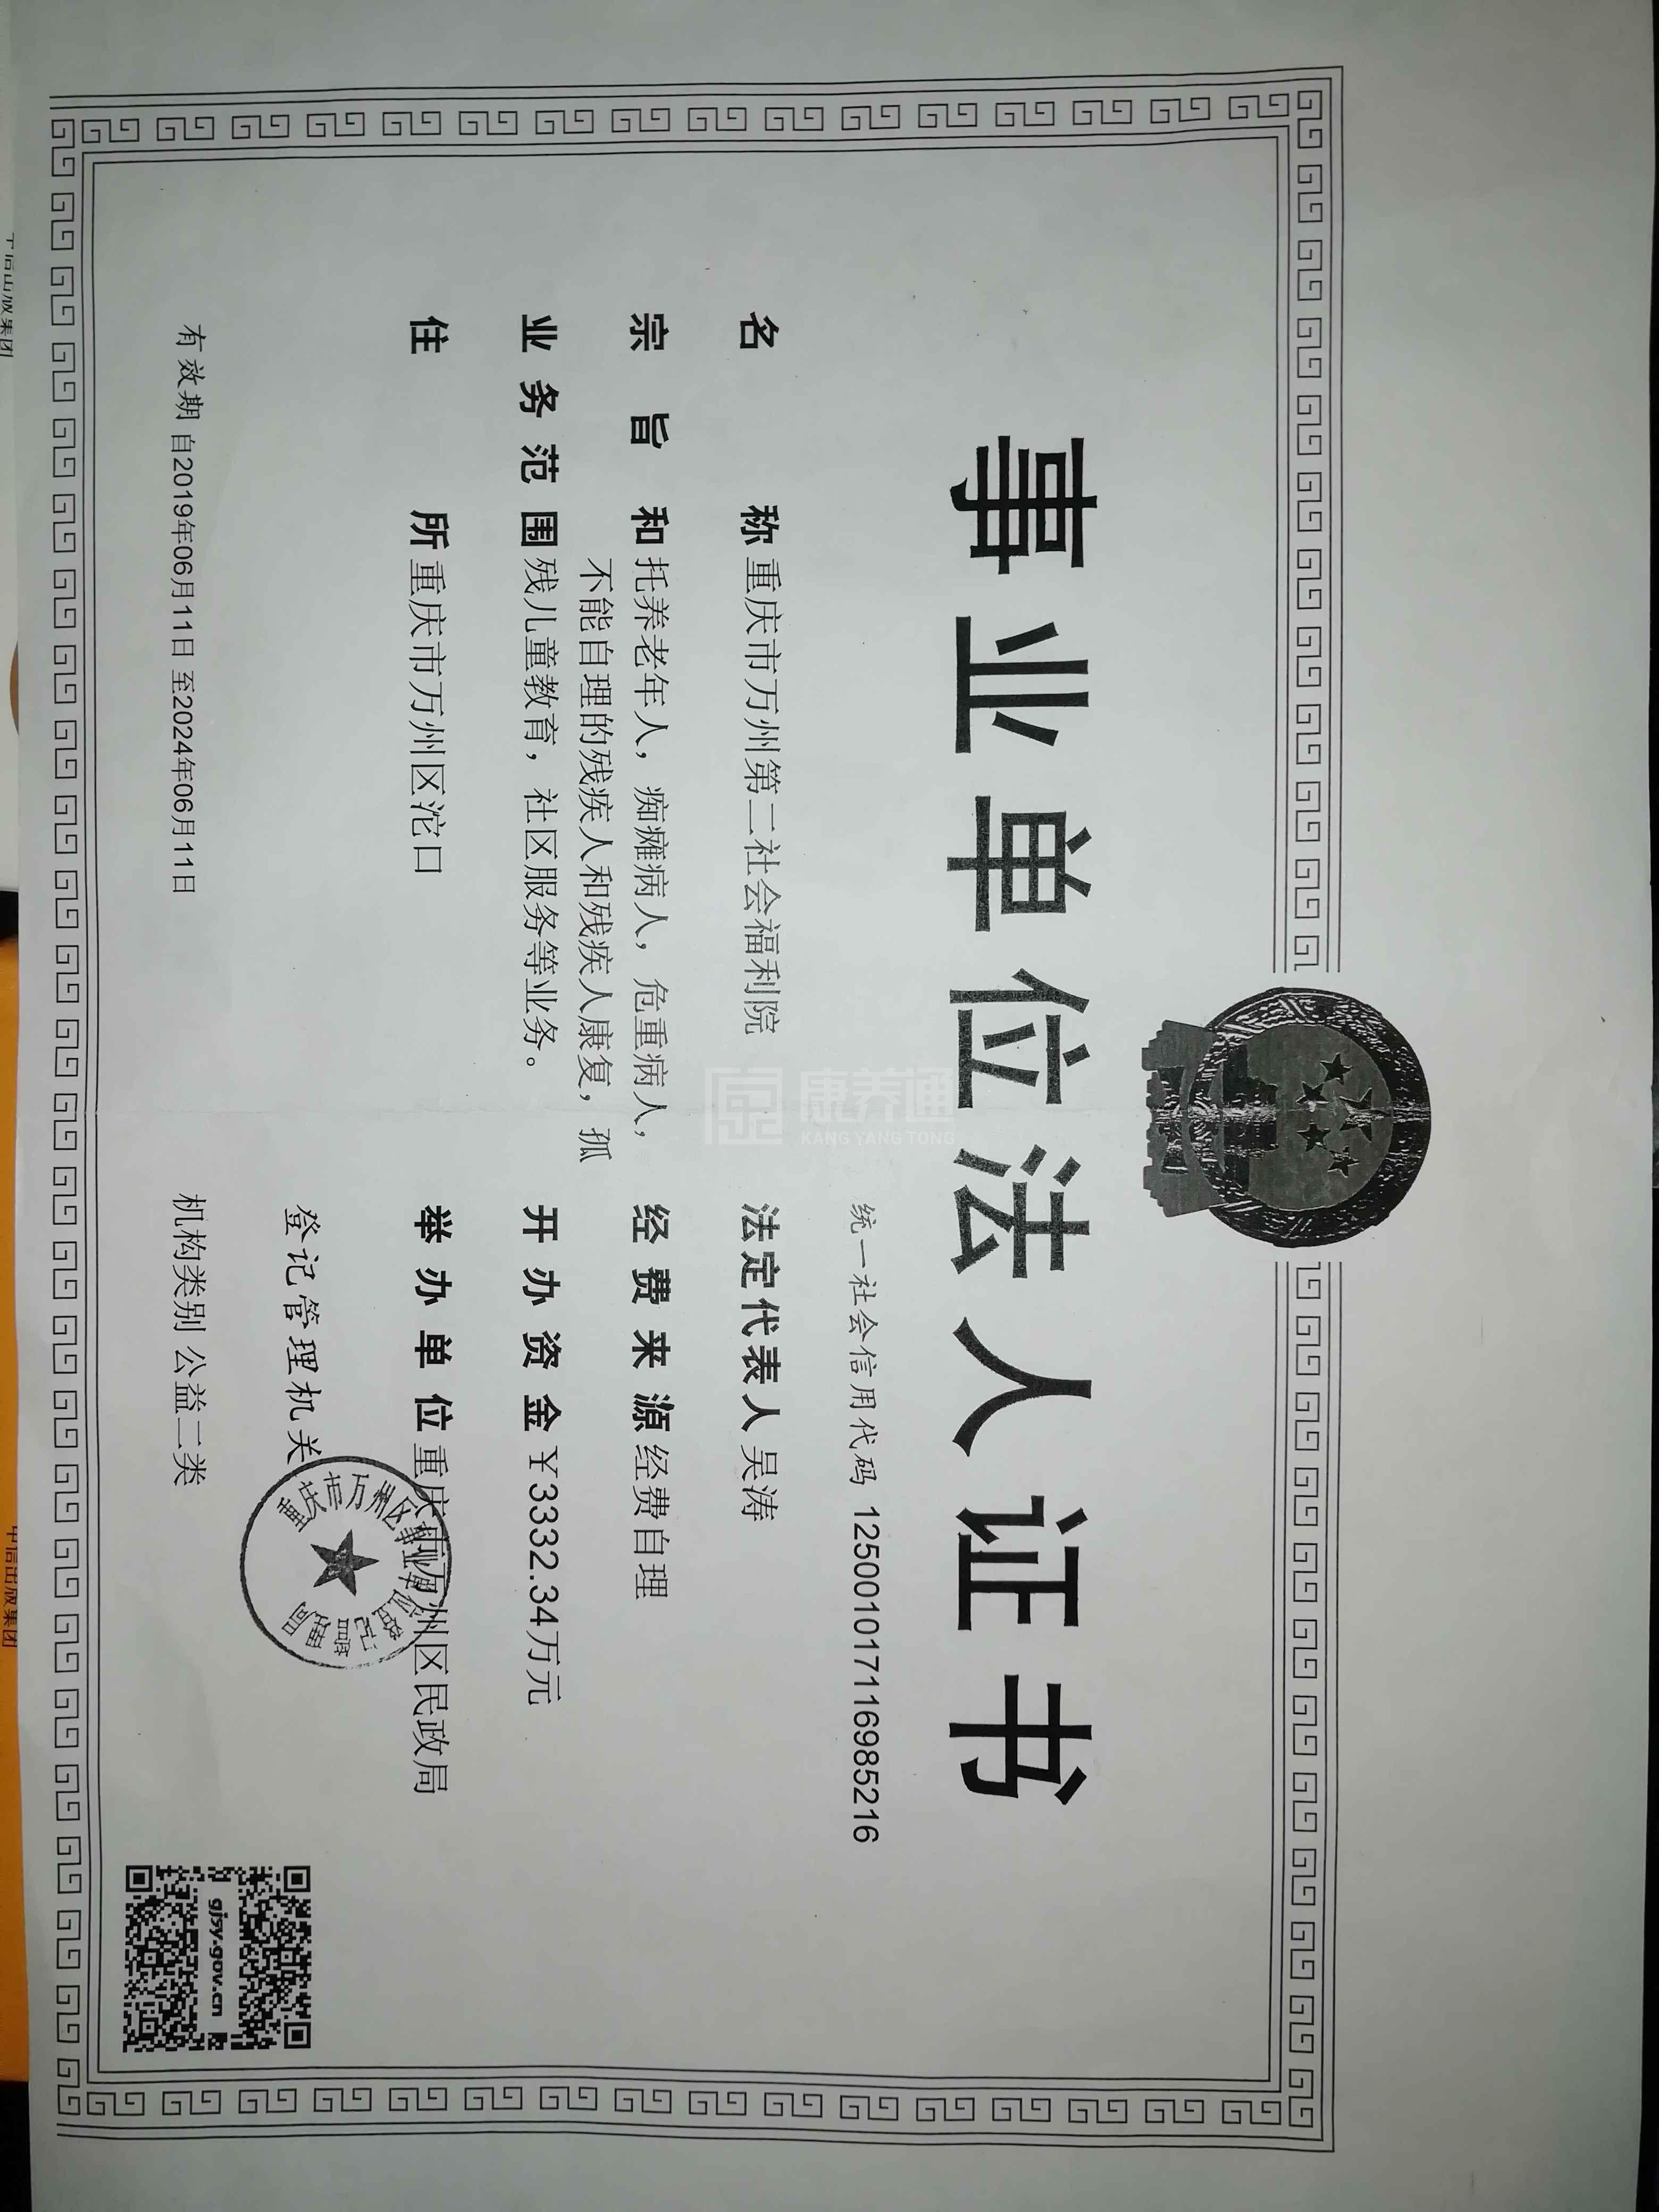 重庆市万州区长岭镇敬老院服务项目图1健康安全、营养均衡、味美可口